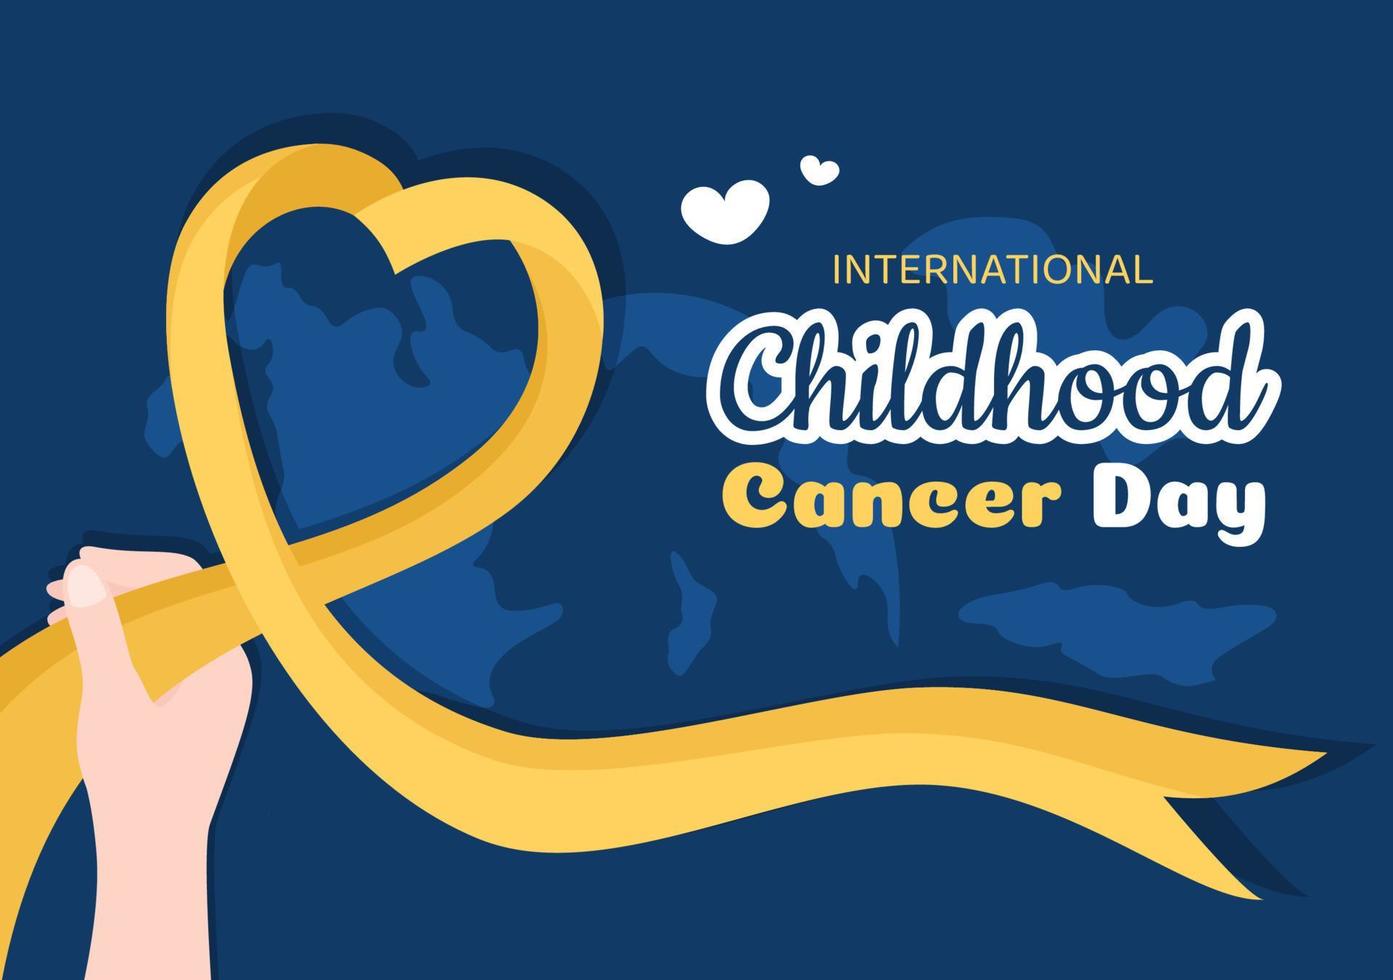 internazionale infanzia cancro giorno mano disegnato cartone animato illustrazione su febbraio 15 per raccolta fondi, promozione il prevenzione e esprimere supporto vettore